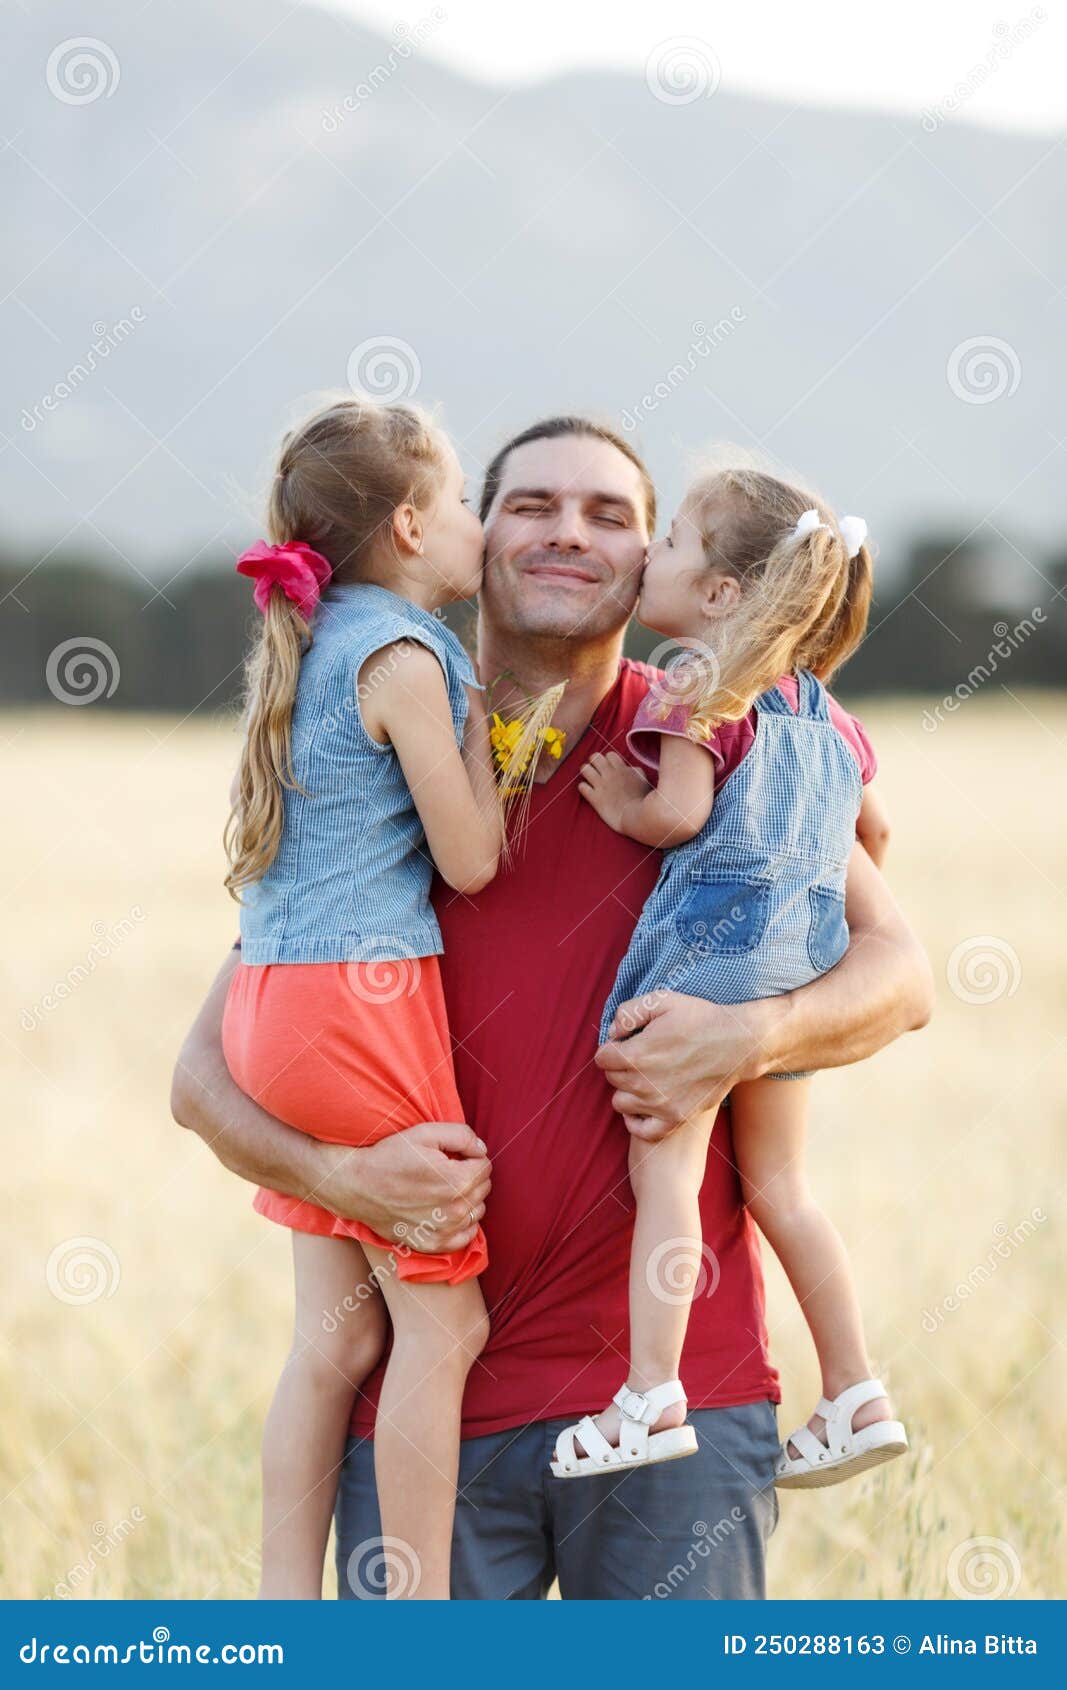 andy bartley recommends padres cojiendo con sus hijas pic